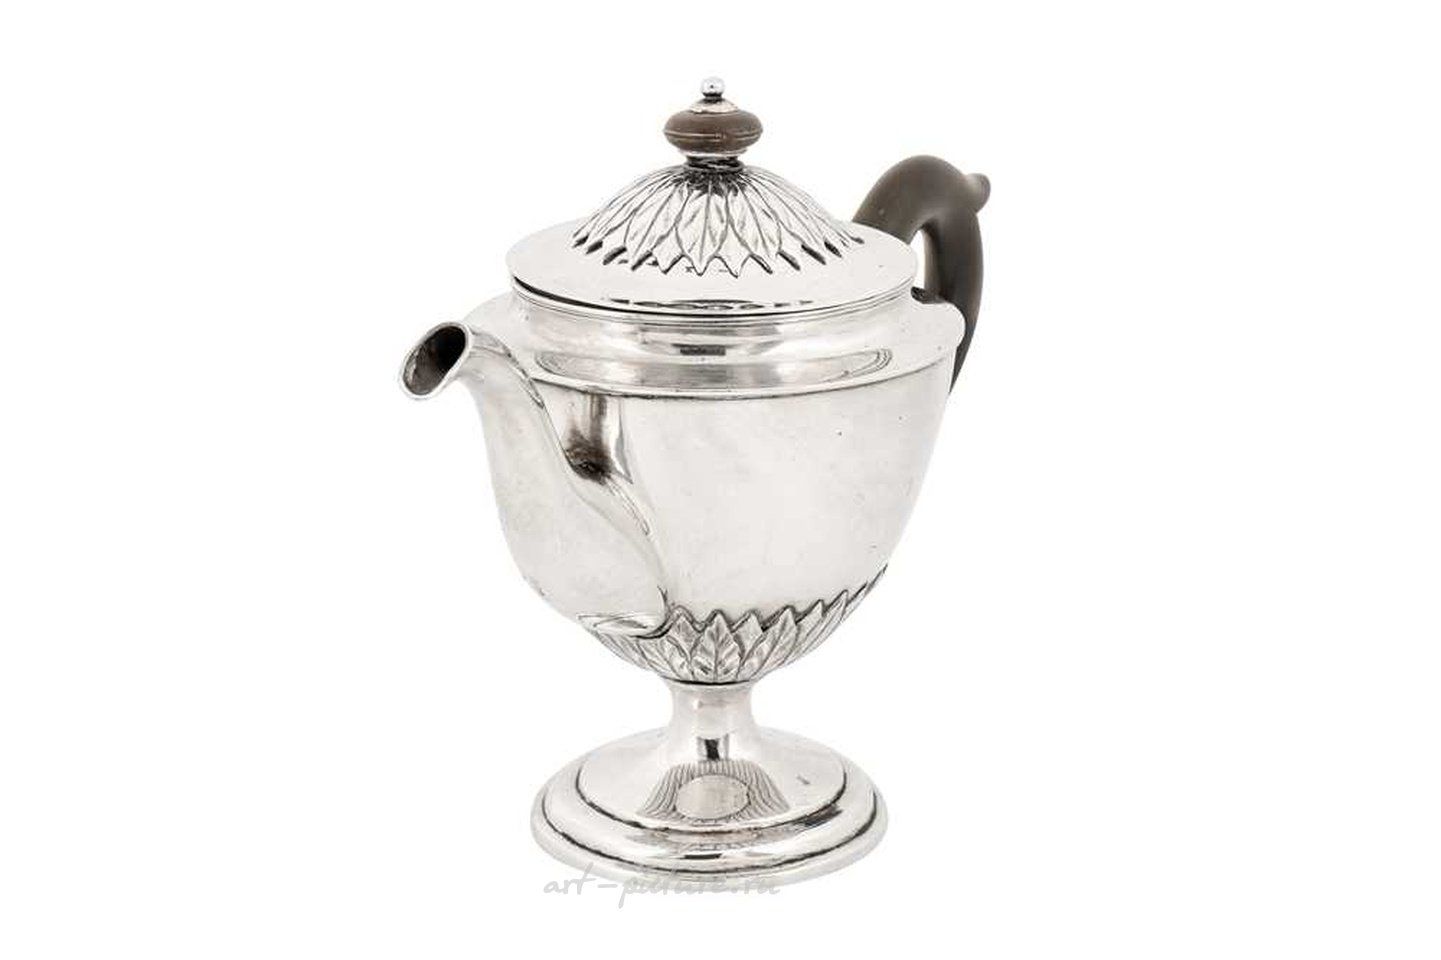 Русское серебро , Маленький чайник русского серебра начала XIX века